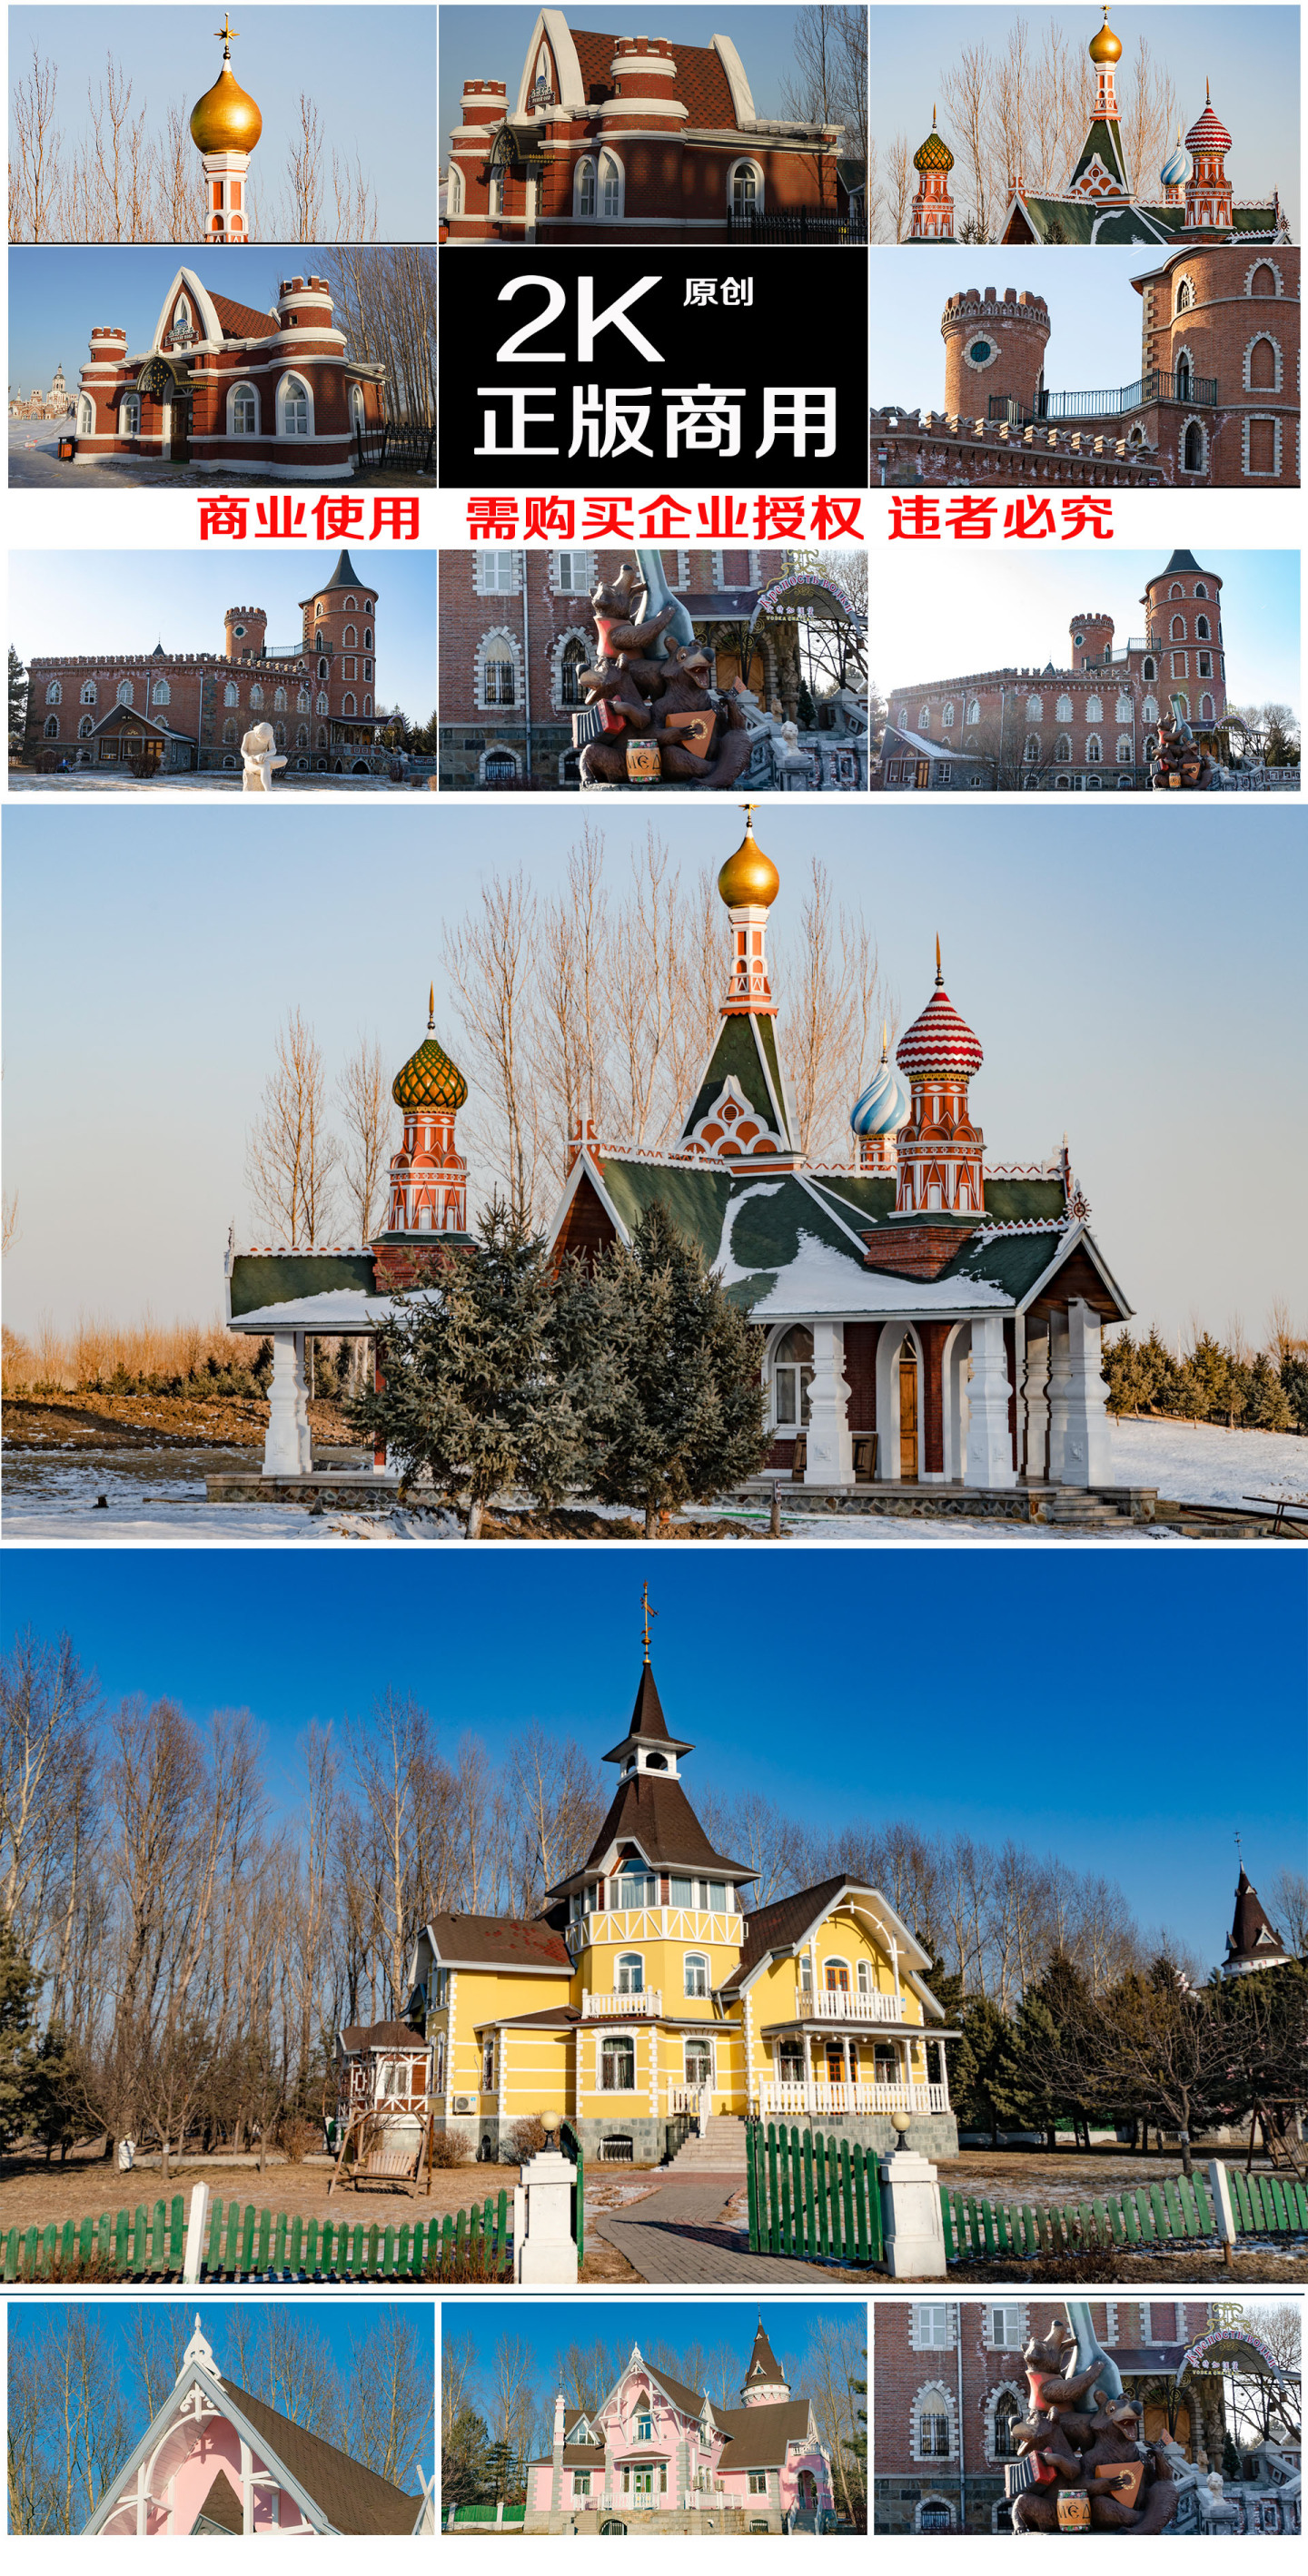 伏尔加庄园 俄罗斯文化 欧式风建筑